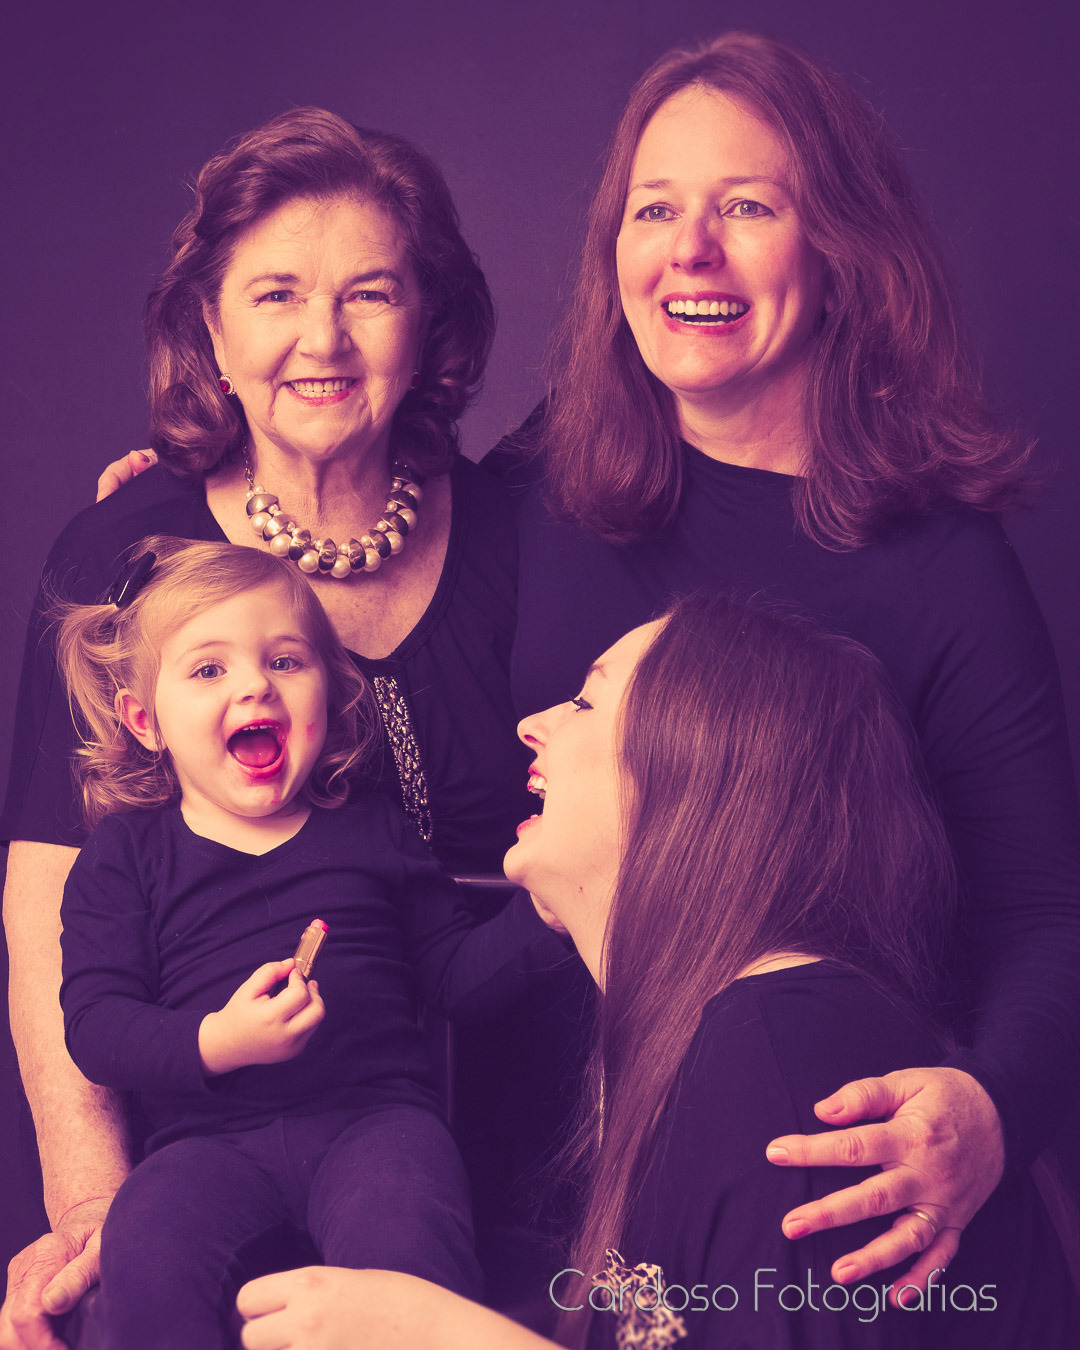 4 gerações de mulheres durante um ensaio fotográfico em estúdio vestindo roupas pretas e sorrindo.